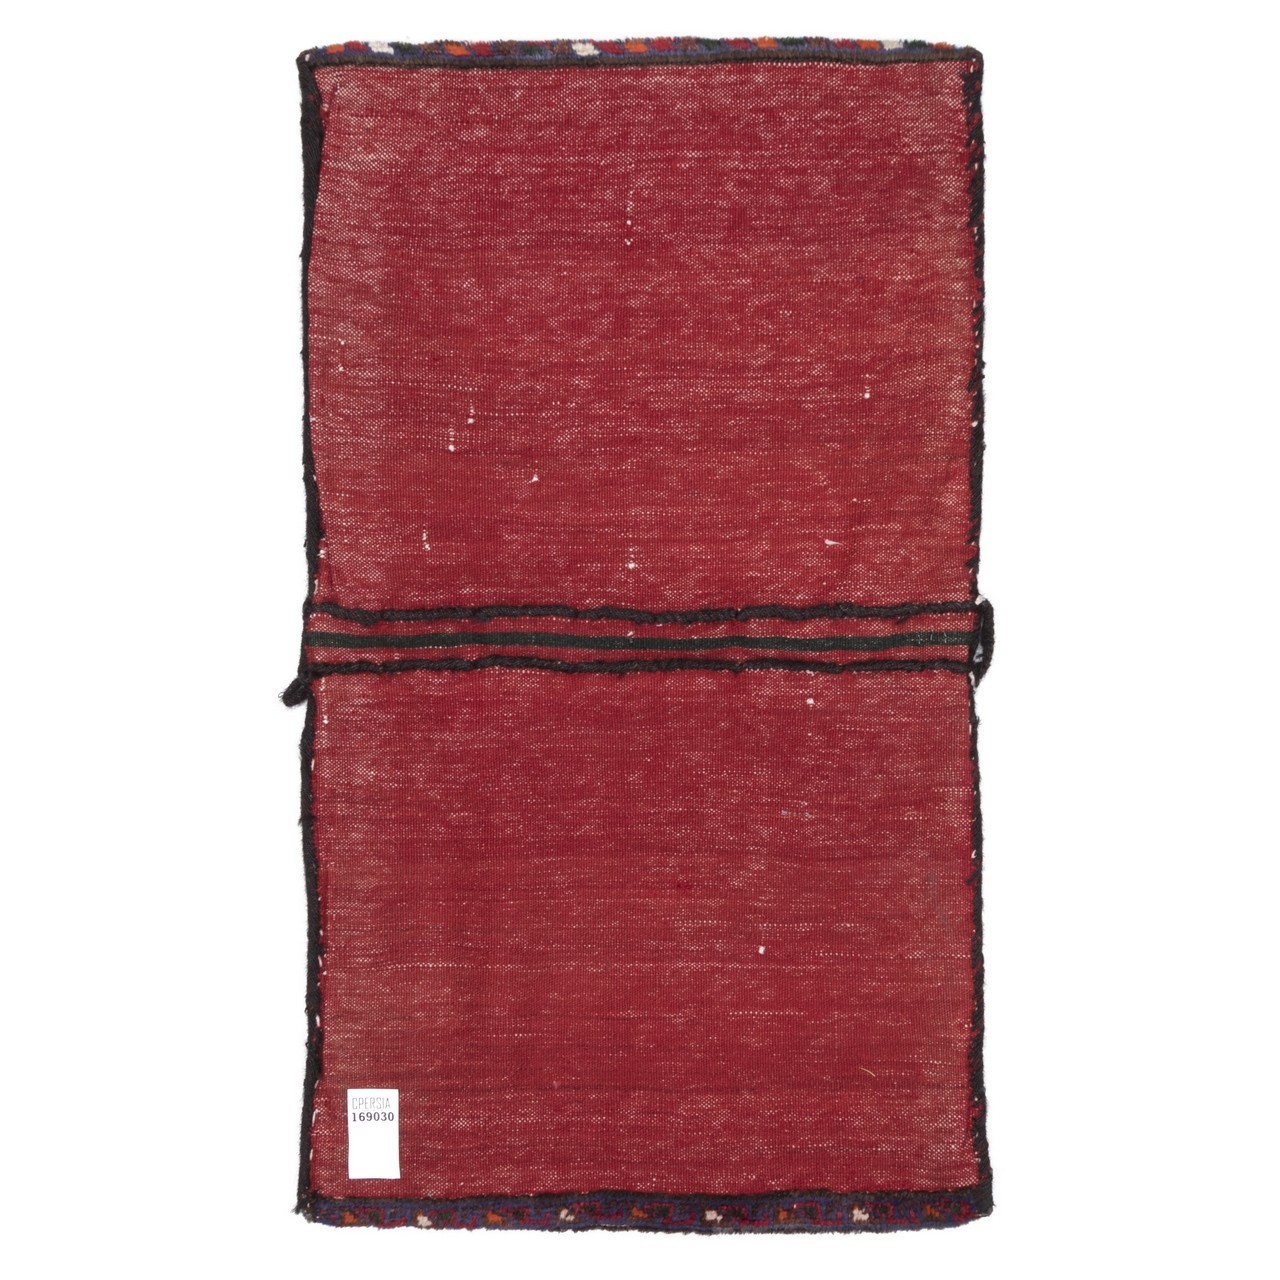 خورجین دستباف قدیمی قشقایی کد 169030